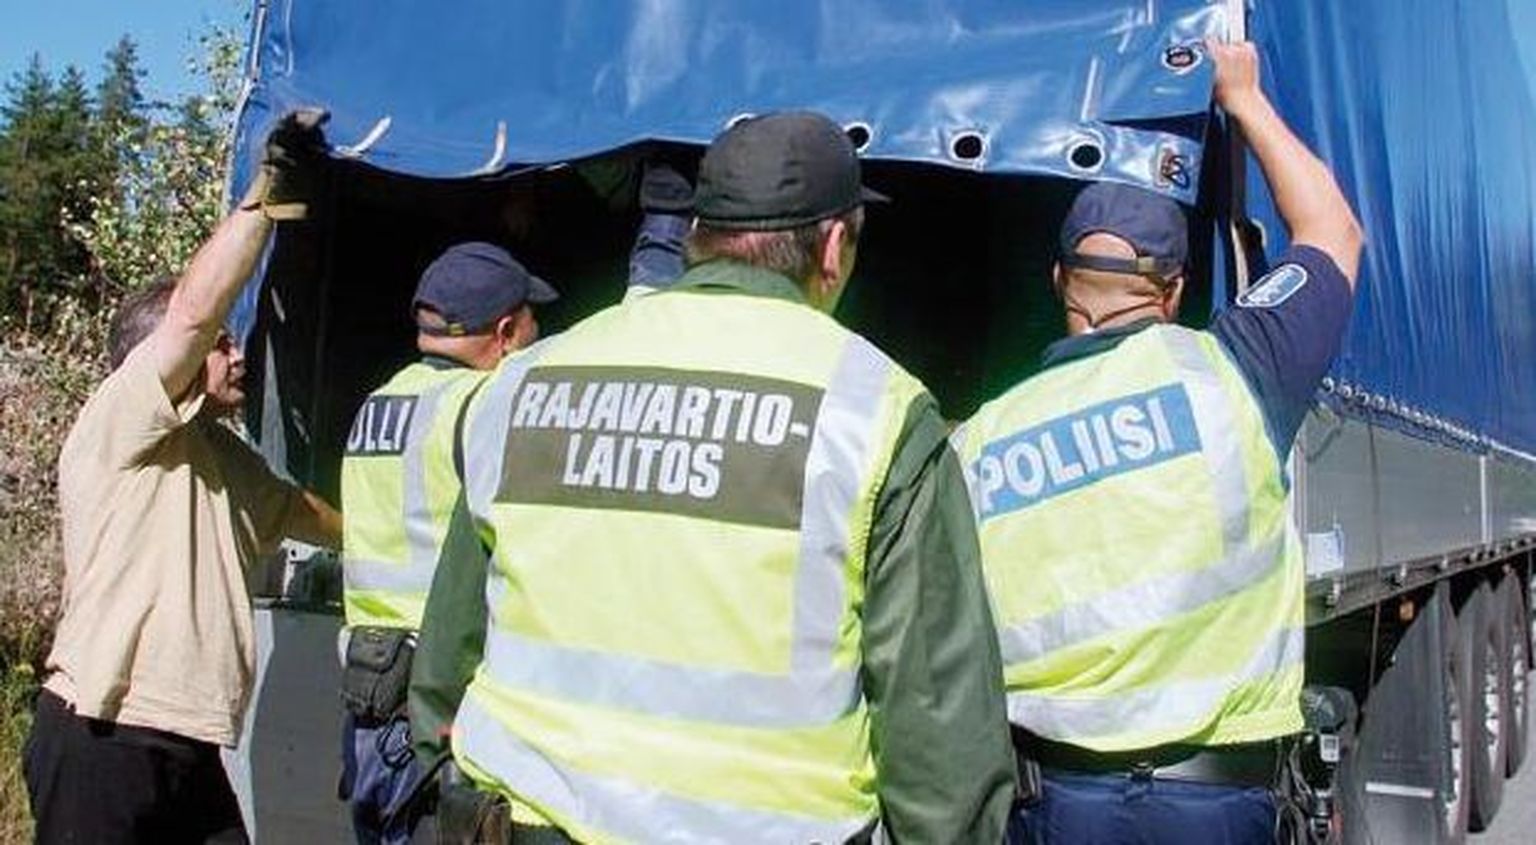 Soome piirivalve- ja tollitöötajad ning politsei